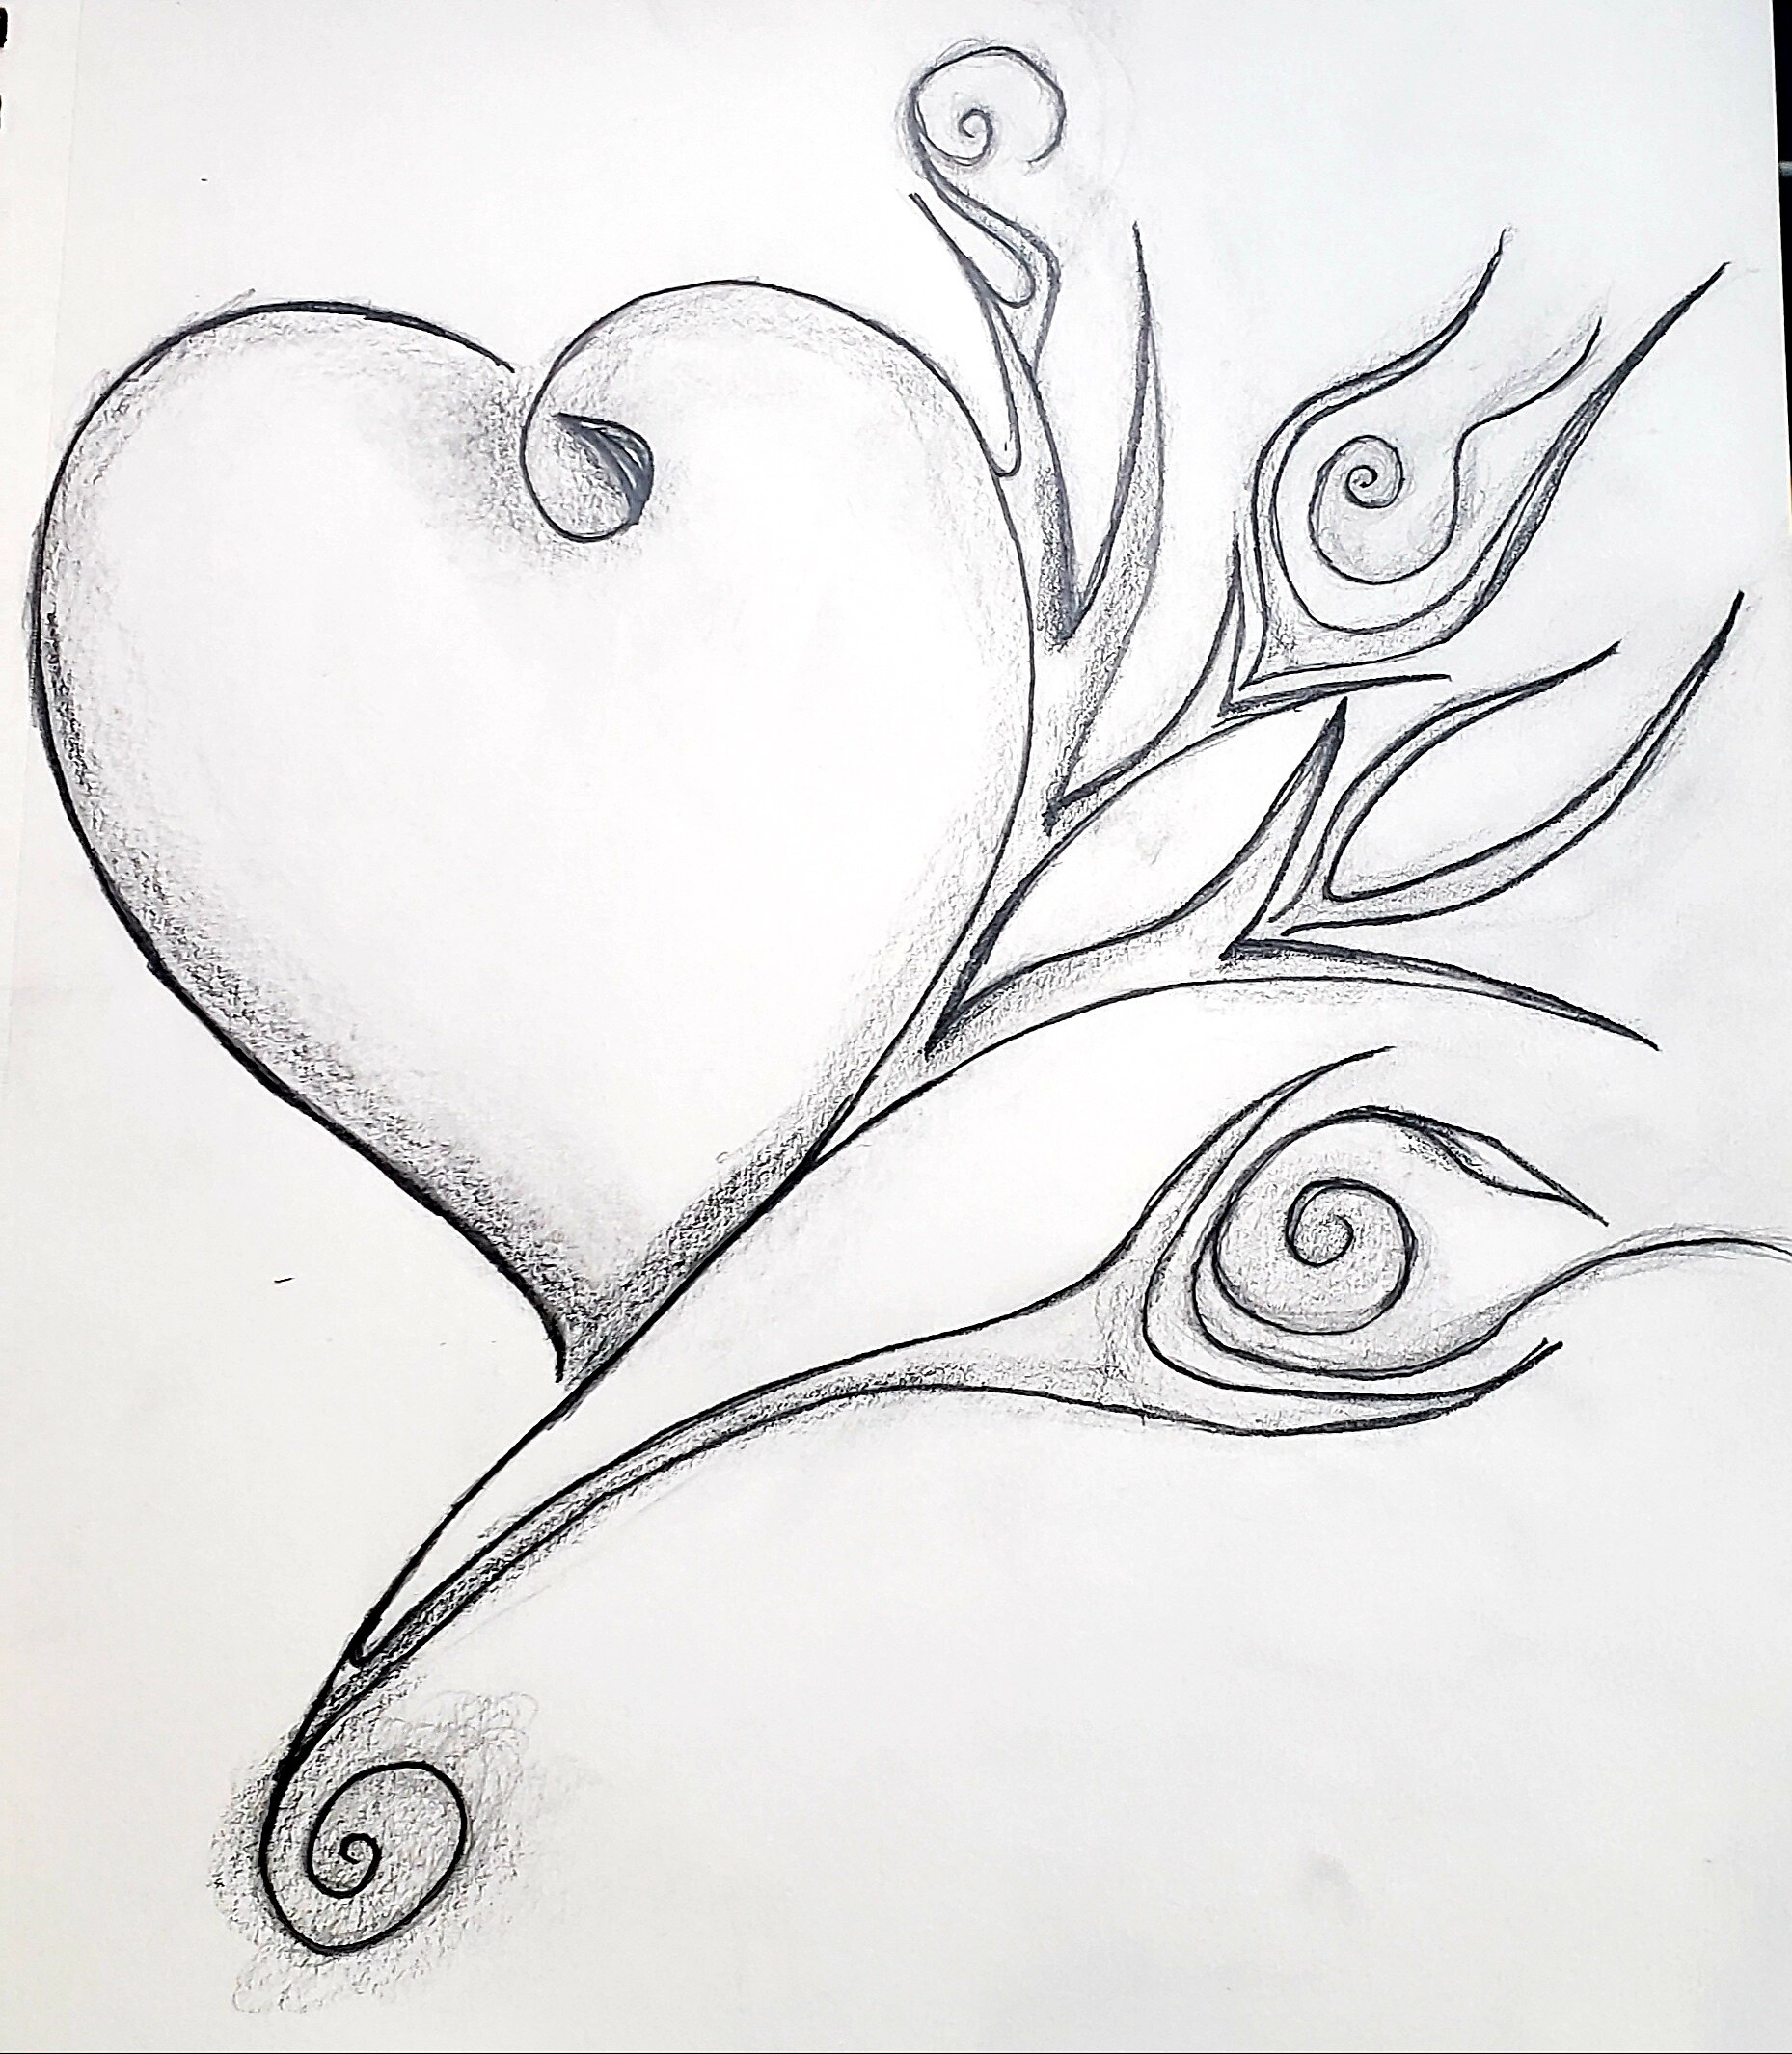 ArtStation - Blooming fiery heart